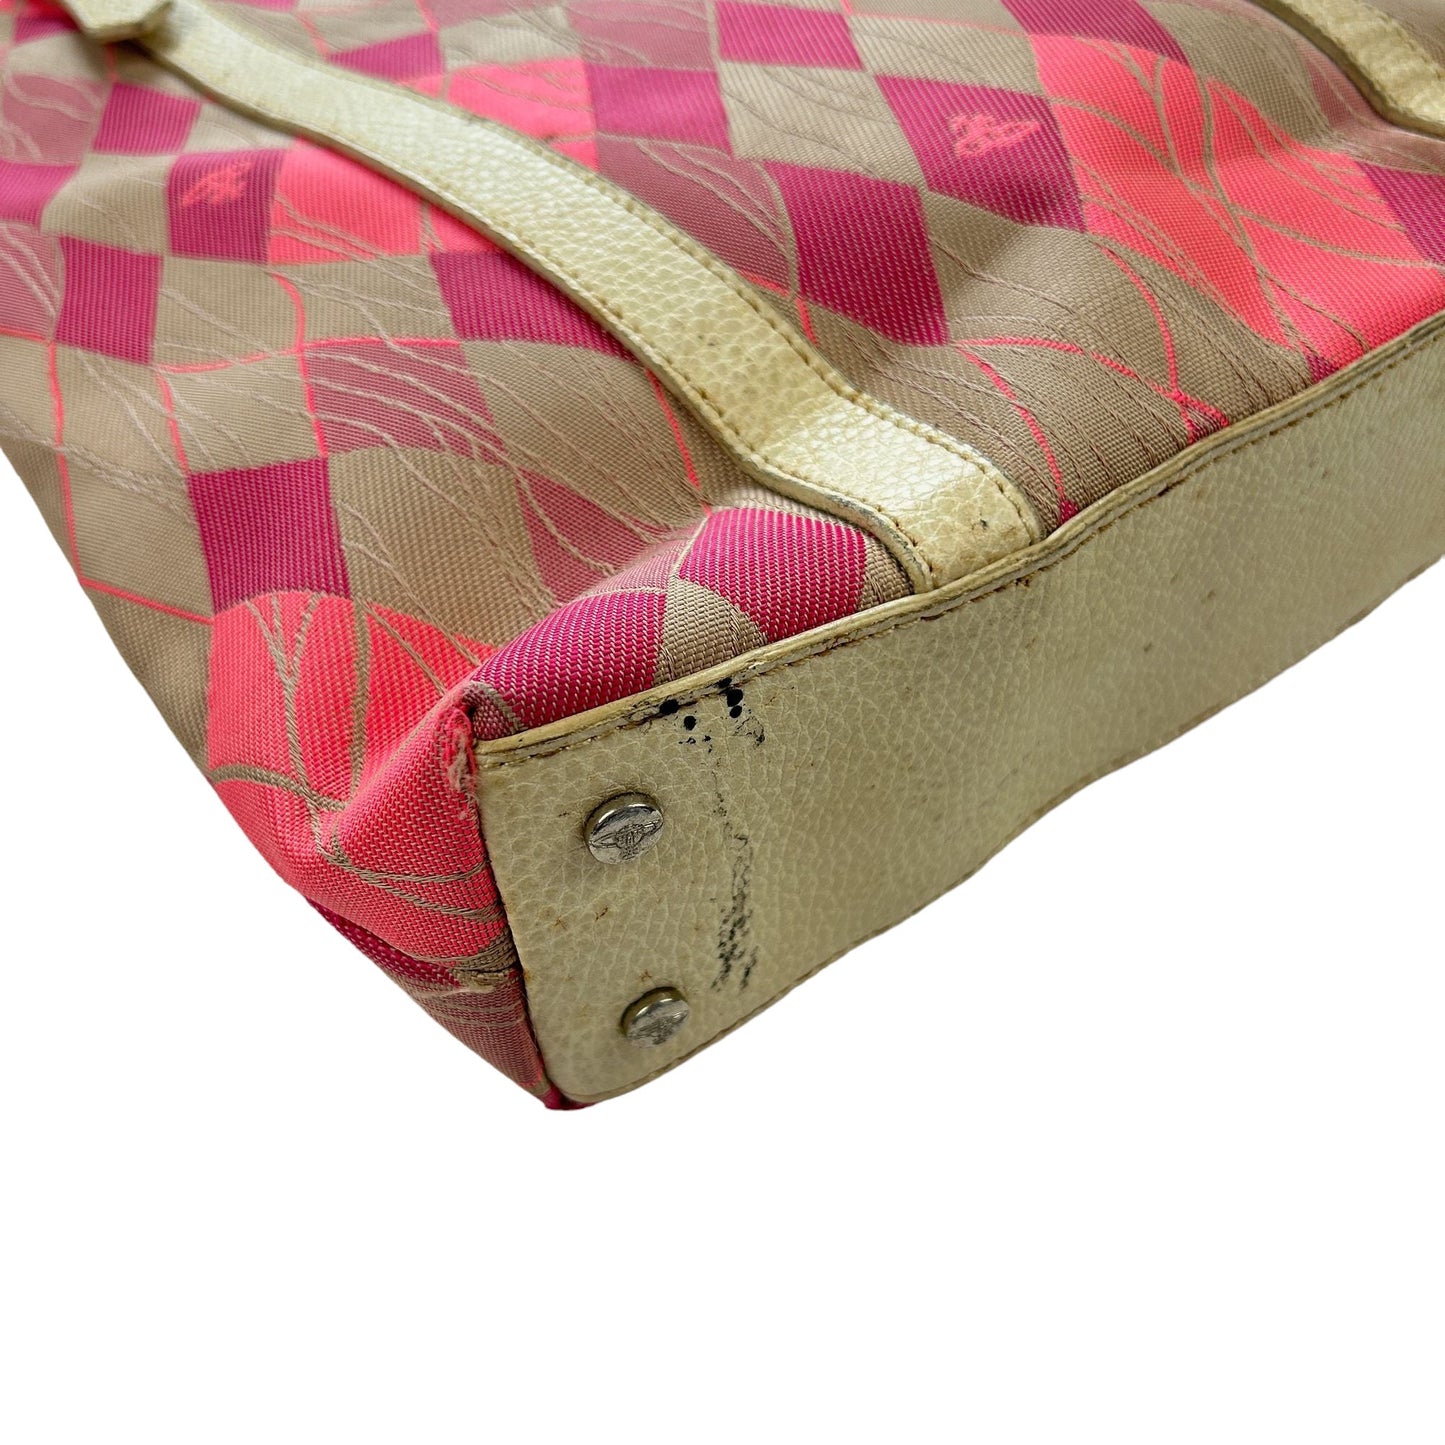 Vintage Vivienne Westwood Pattern Shoulder Bag